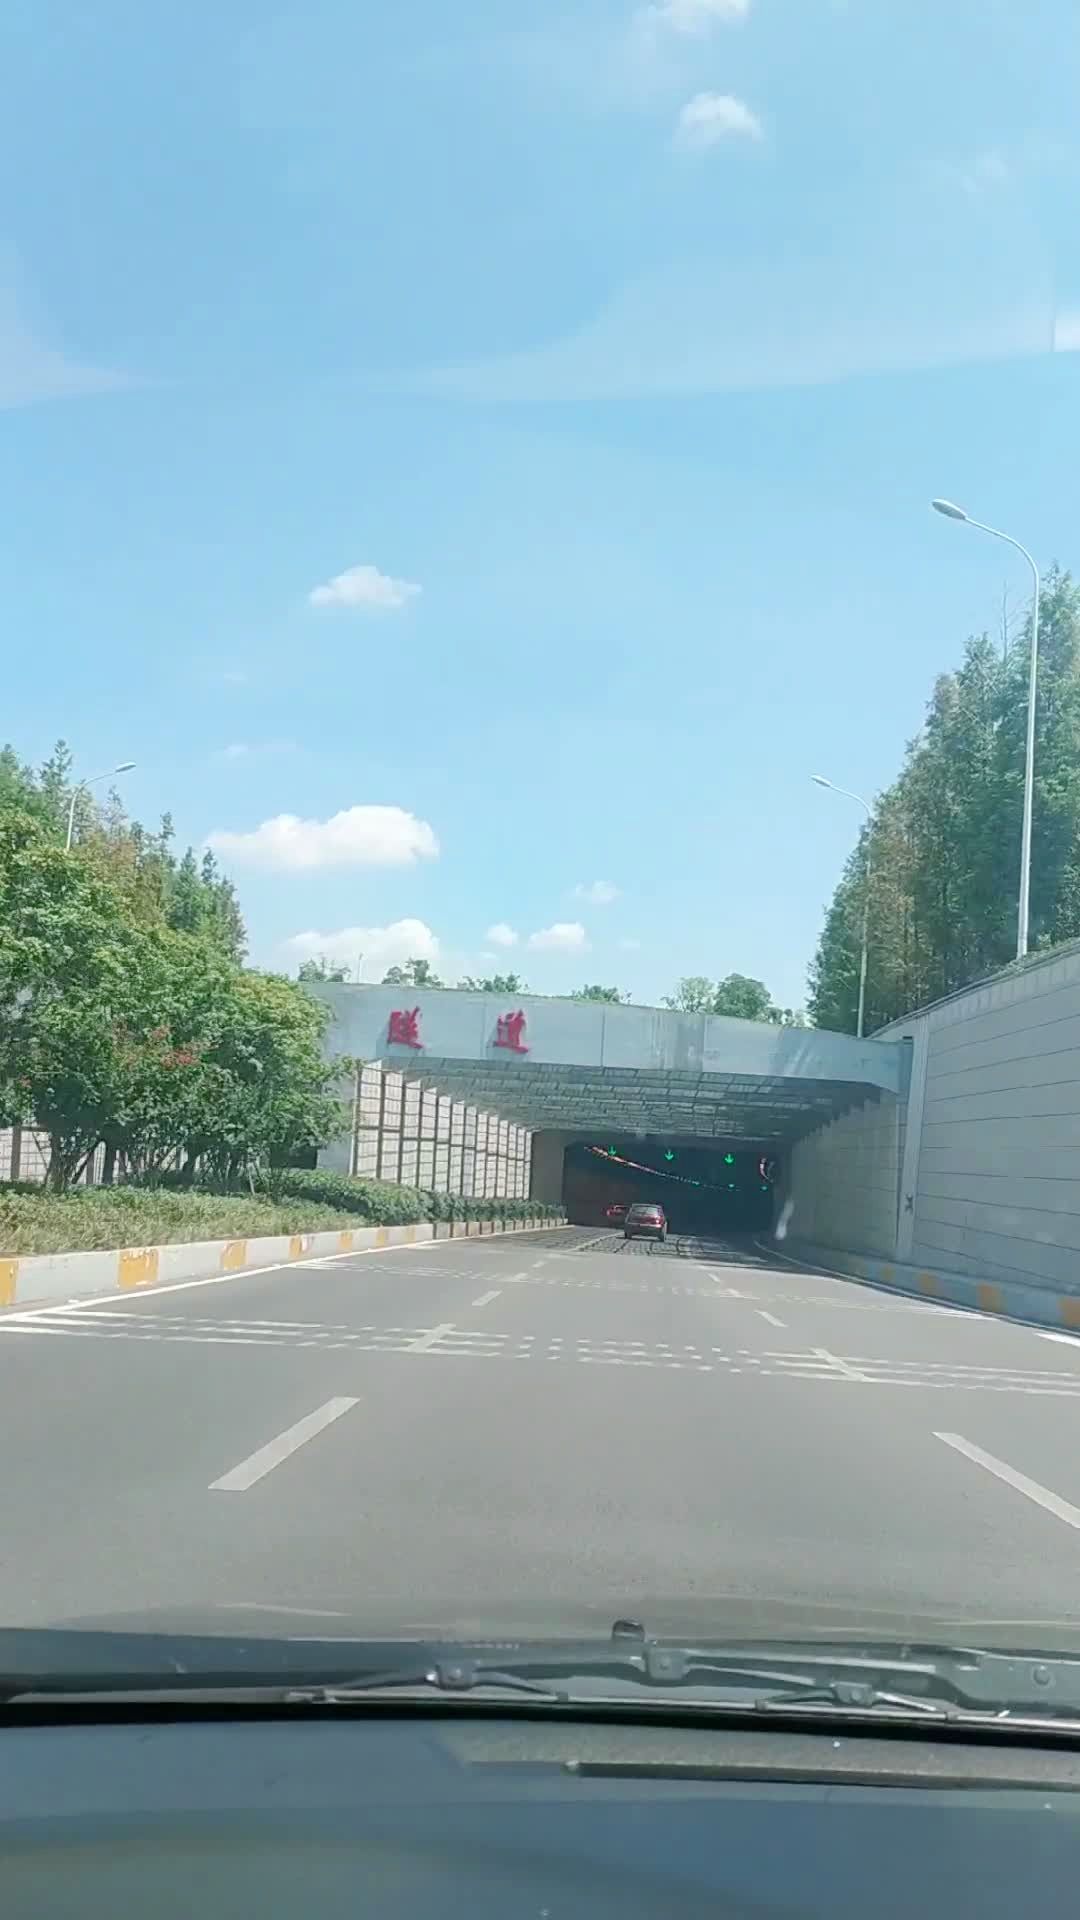 武汉东湖隧道多长图片